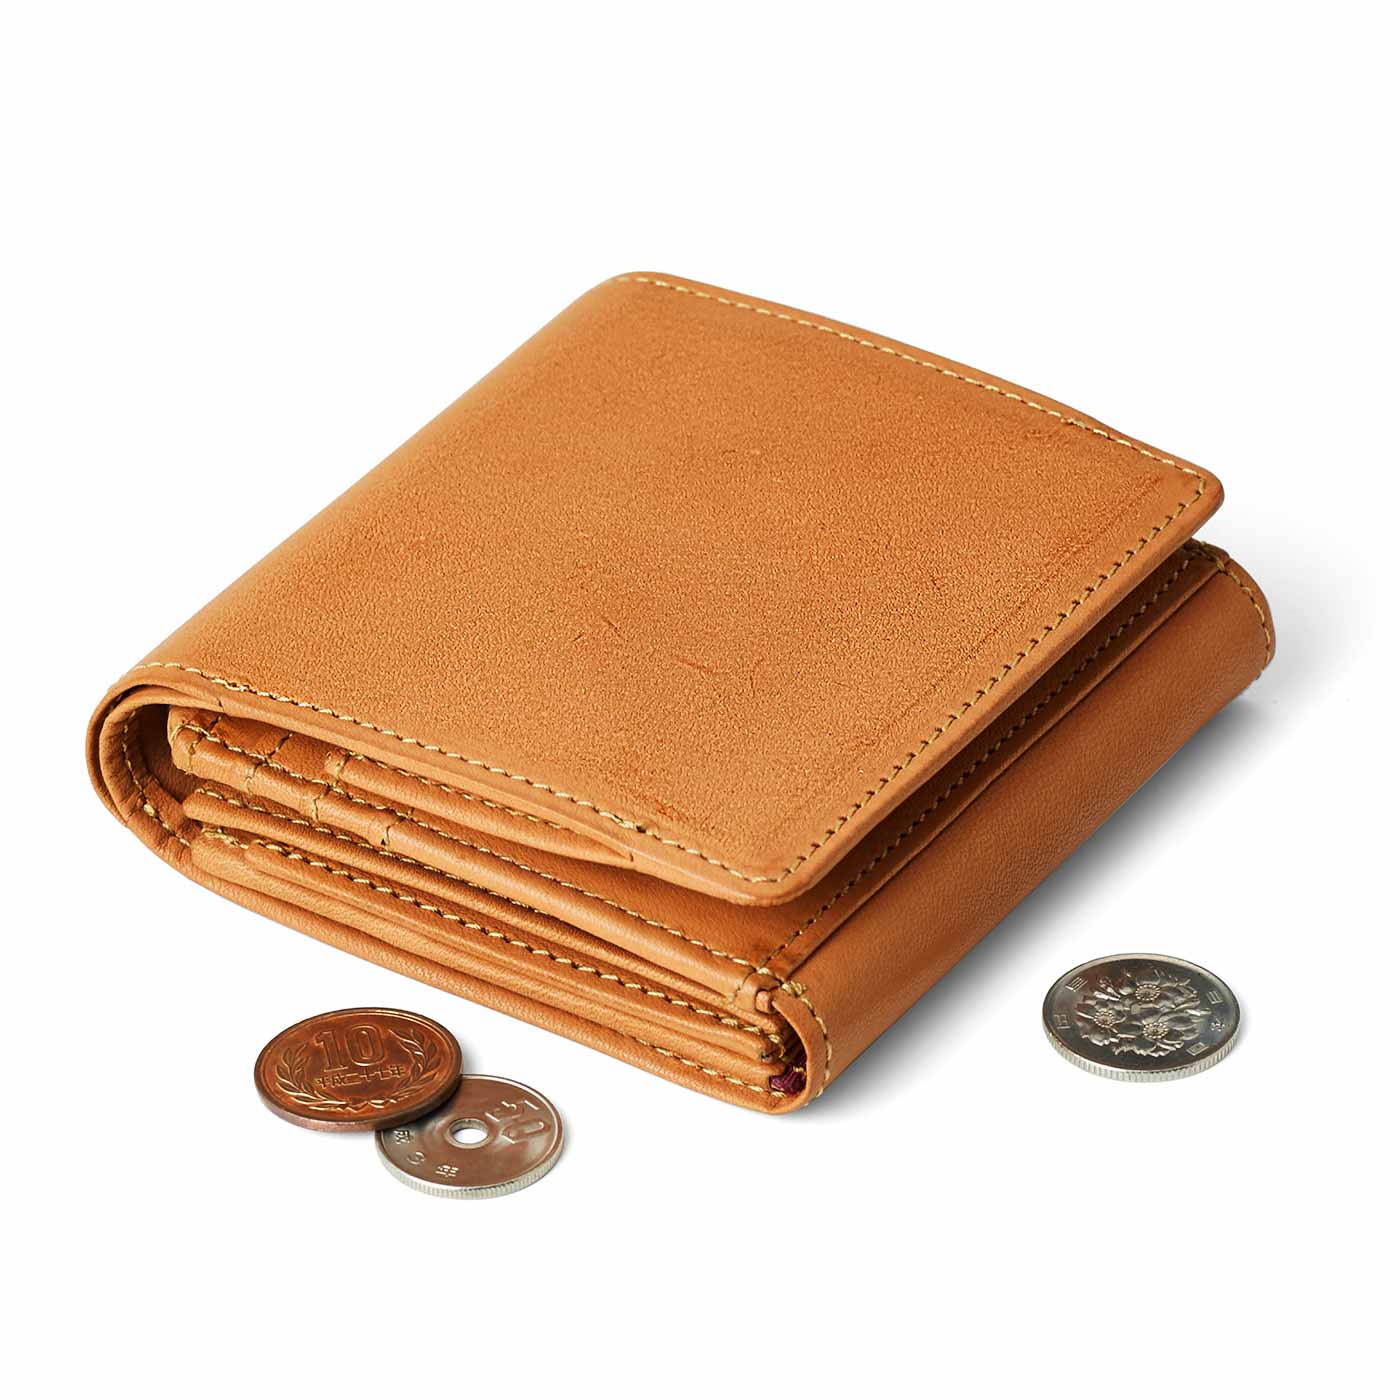 財布職人と作った 職人本革のポケットギャルソン財布〈キャメル〉[本革 財布：日本製]